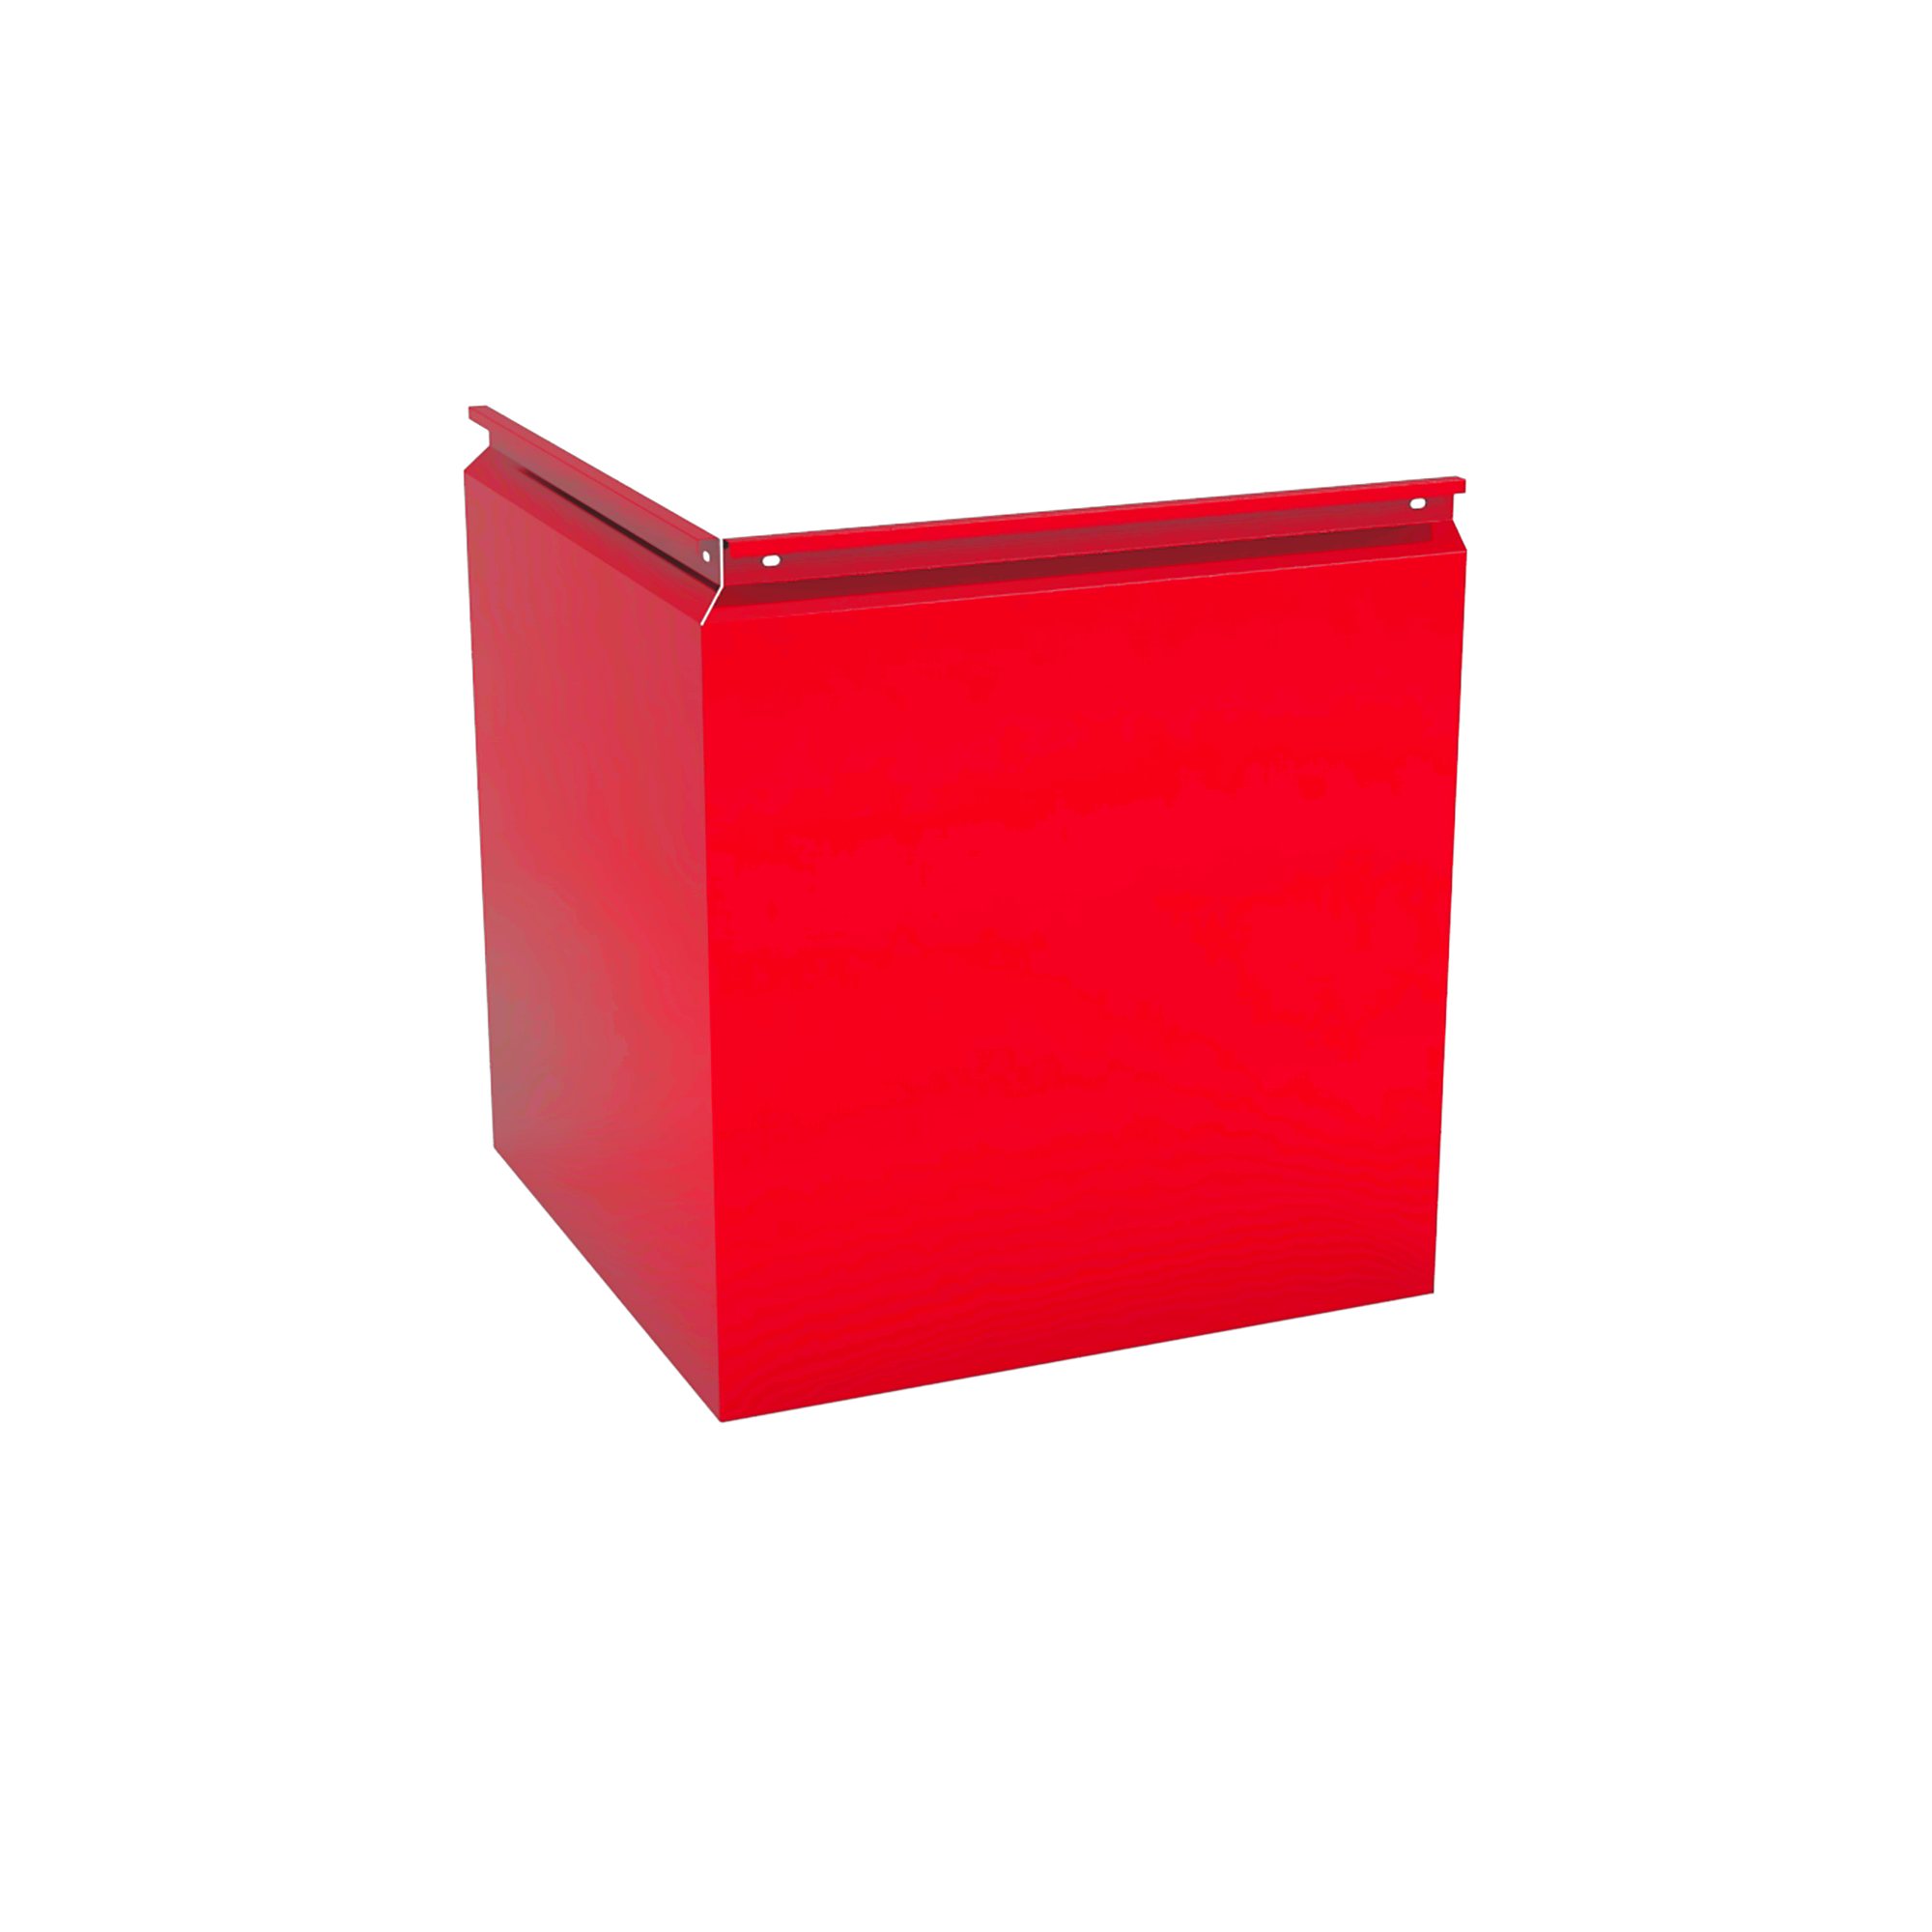 Фасадная кассета Угловая 550 Транспортный красный 1,2 мм Фасадные кассеты Кровля Сервис